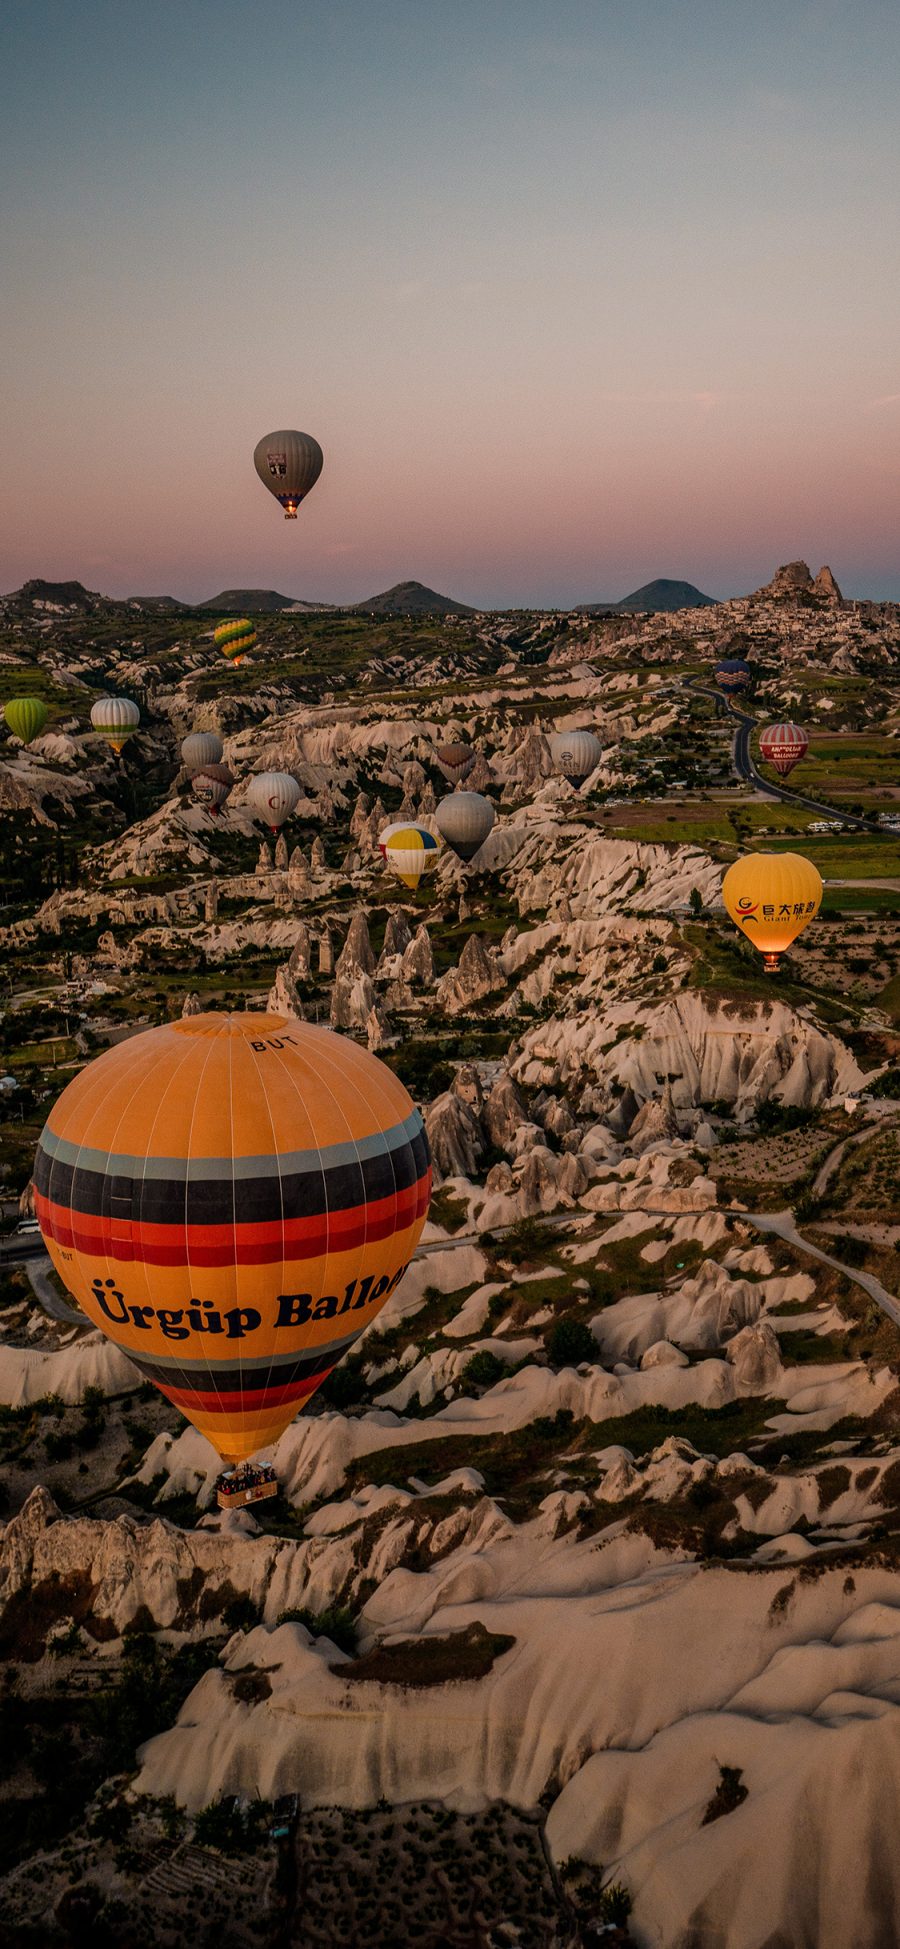 [2436×1125]景色 土耳其 地貌 热气球 苹果手机壁纸图片